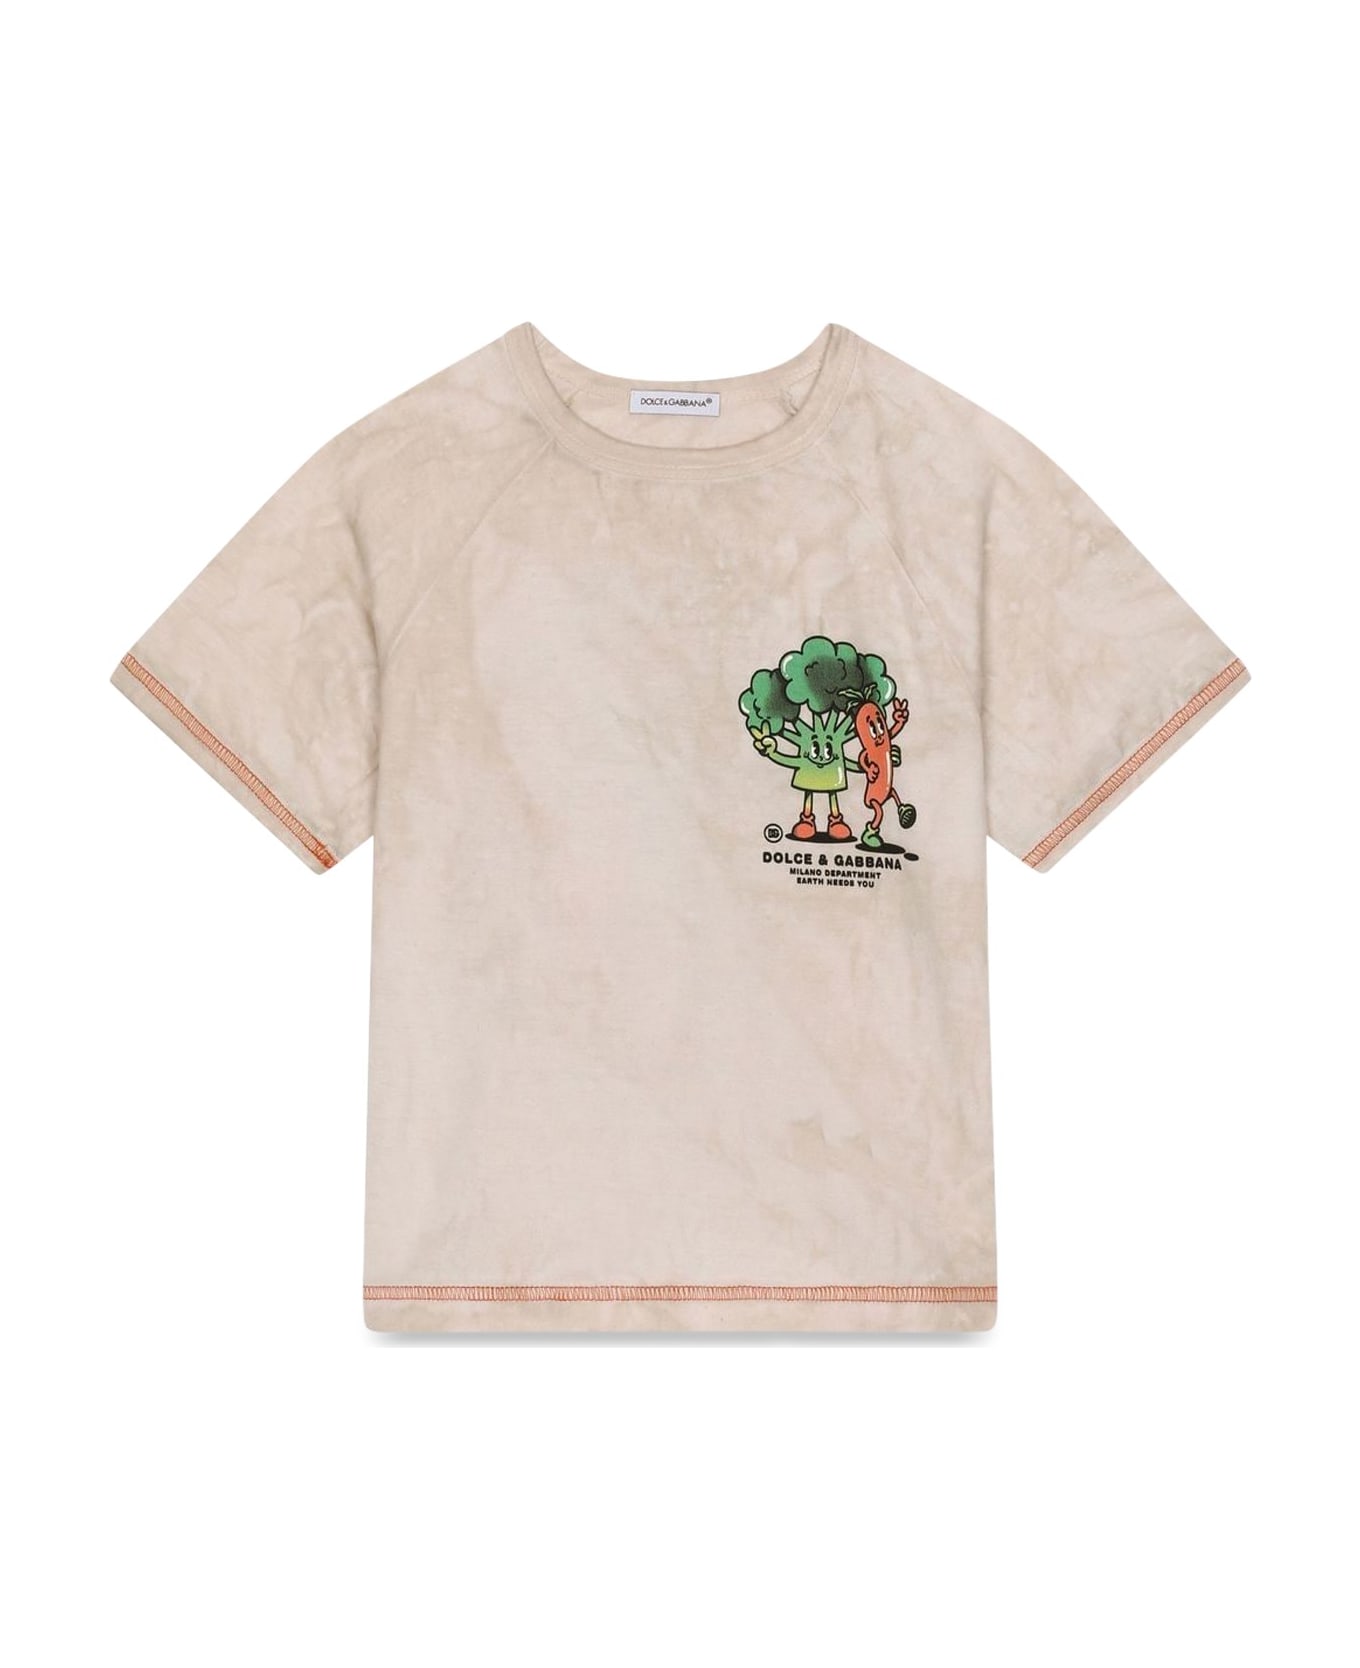 Dolce & Gabbana T-shirt M/c Gardener - BEIGE